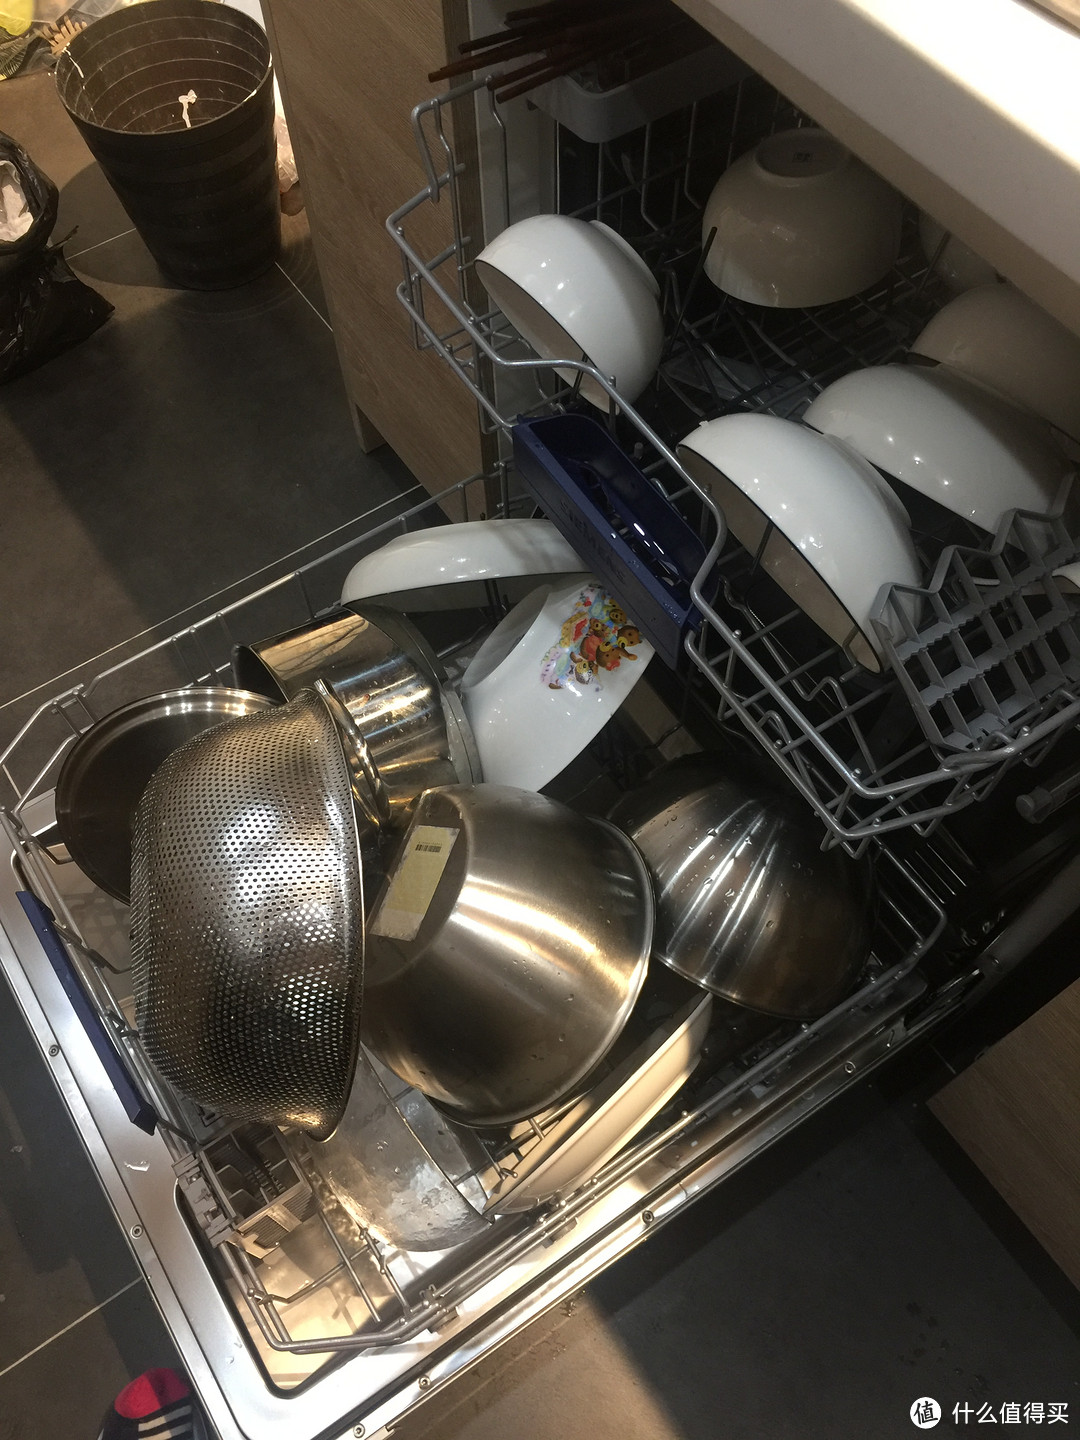 #热征#洗碗机# 洗碗机，难道是什么新鲜玩意嘛？